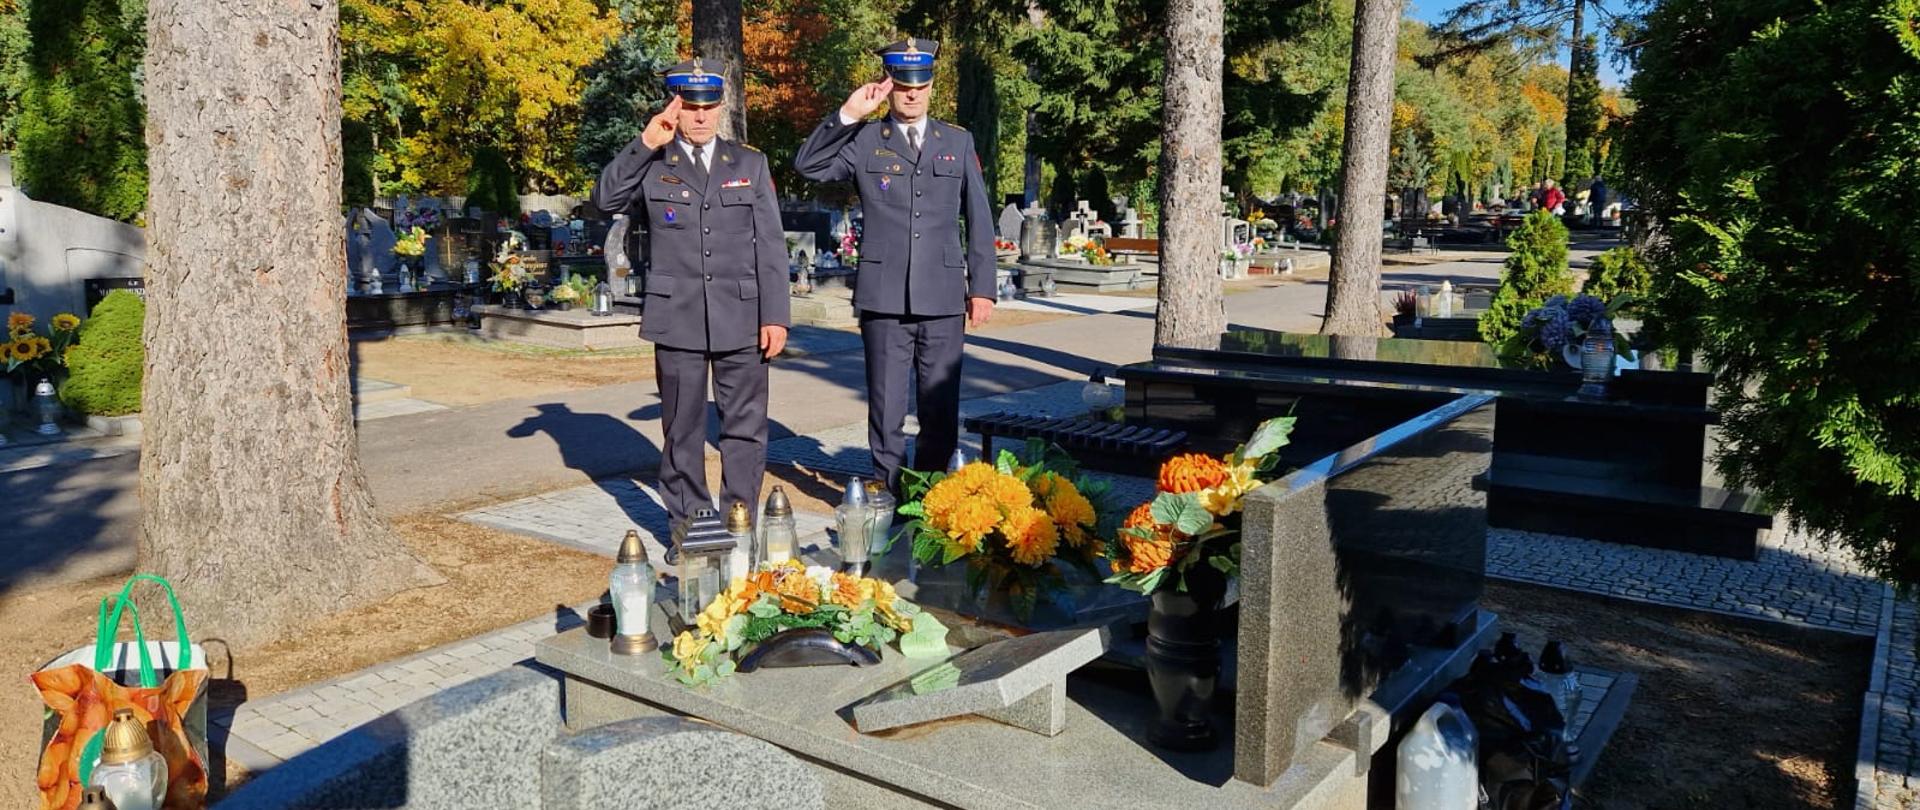 Strażacy oddają honory przed grobem zmarłego funkcjonariusza, na grobowcu kwiaty i znicze 